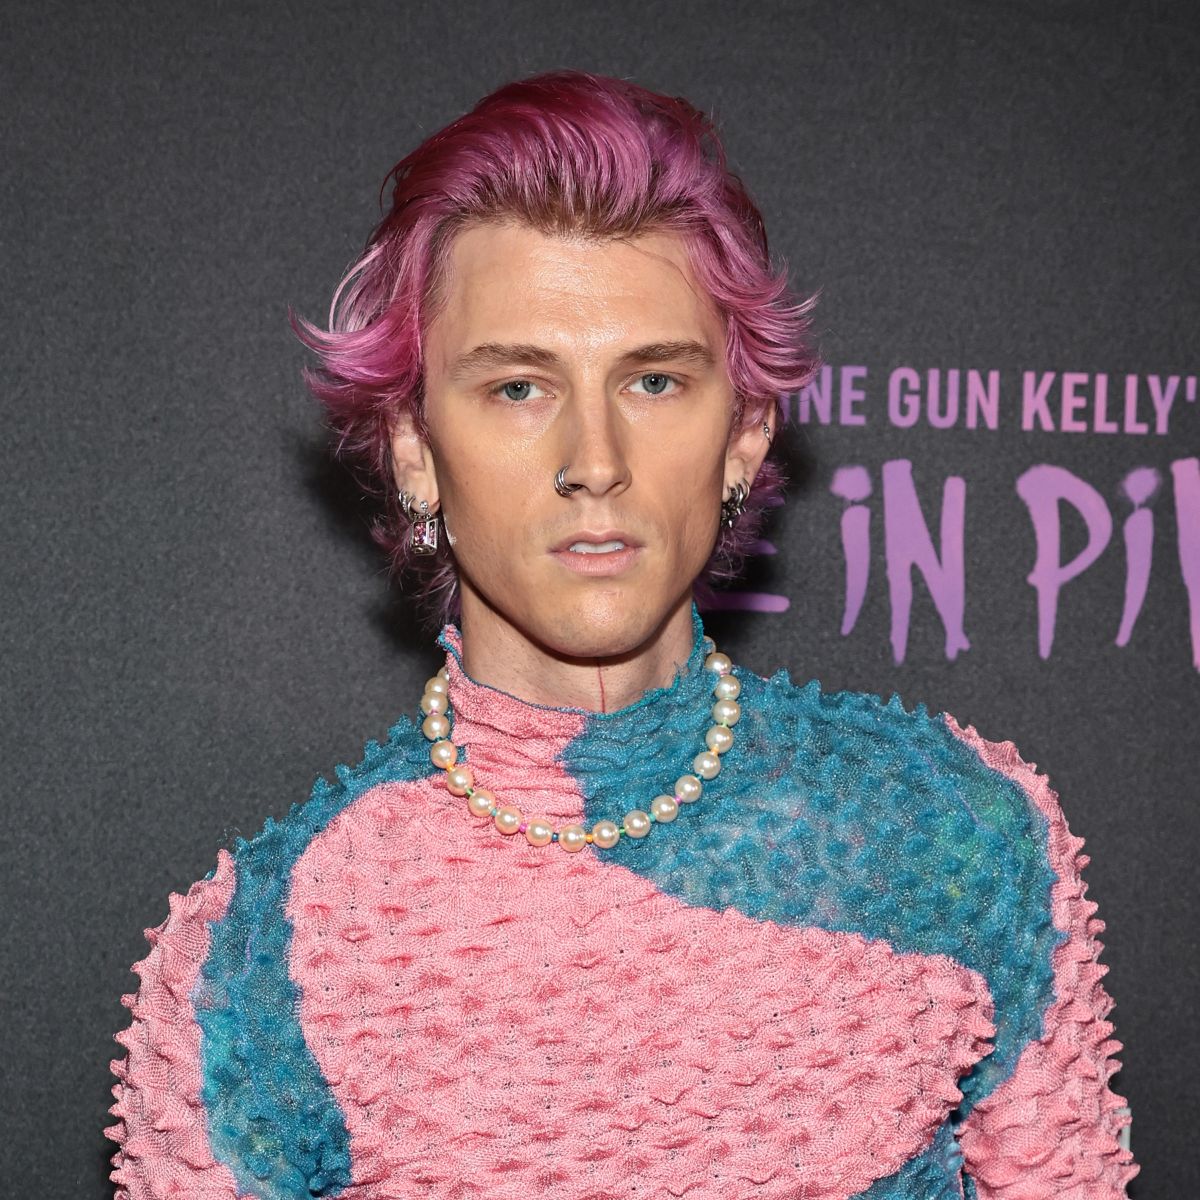 Machine Gun Kelly: Textured Pink Hairstyle